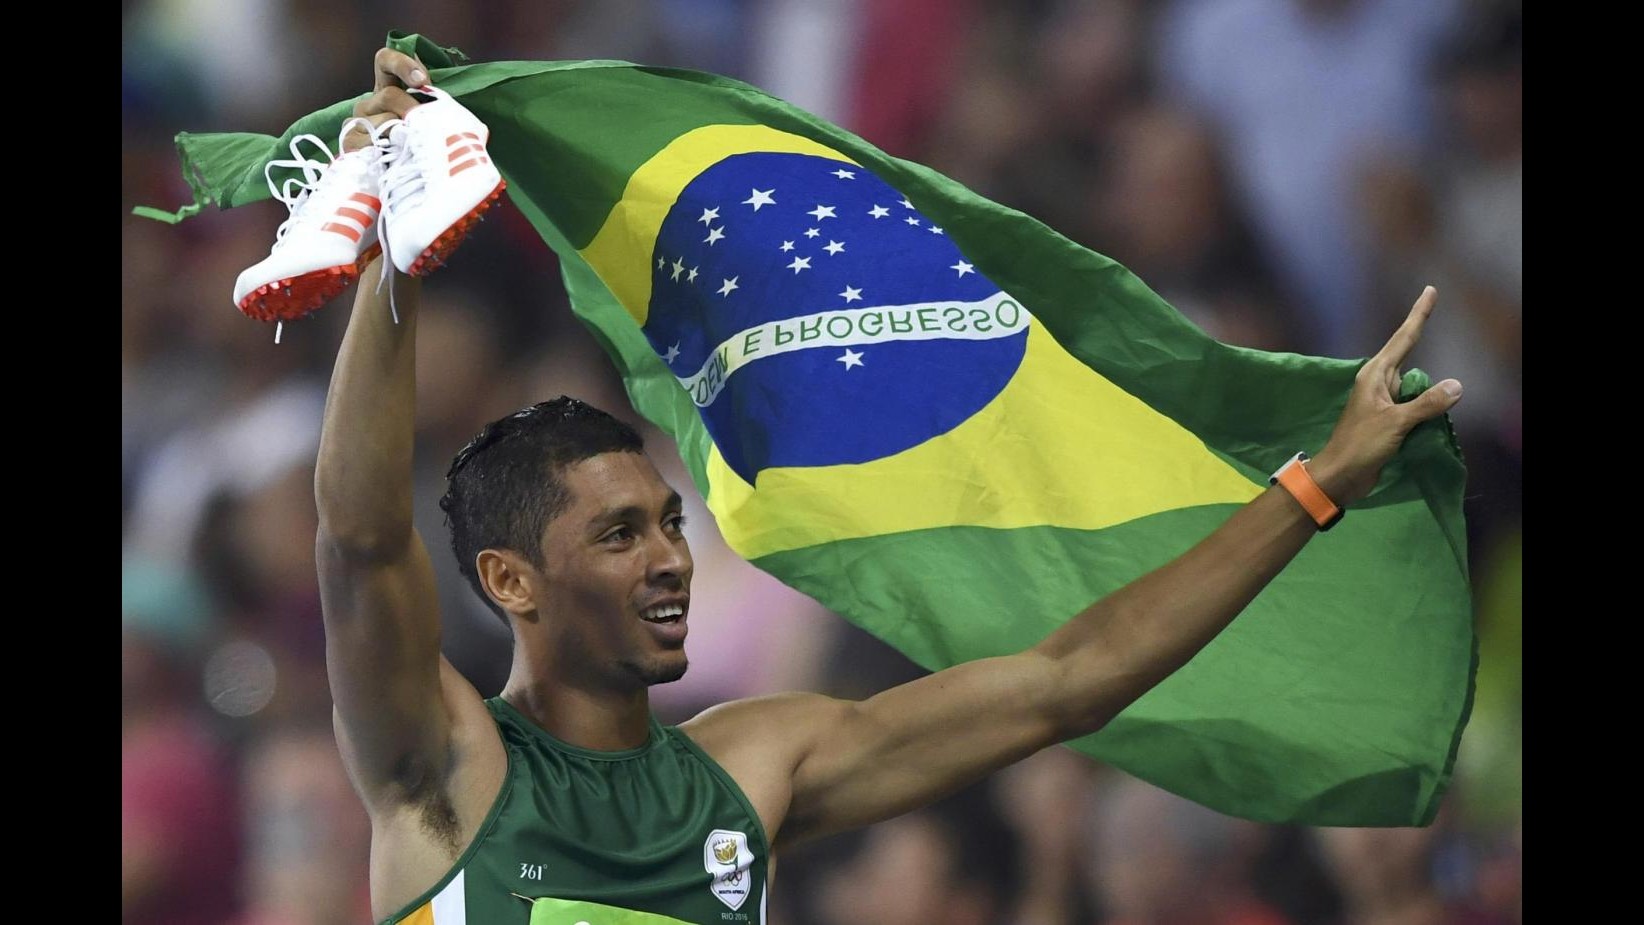 FOTO Rio, Wayde van Niekerk oro e recordo del mondo nei 400 metri